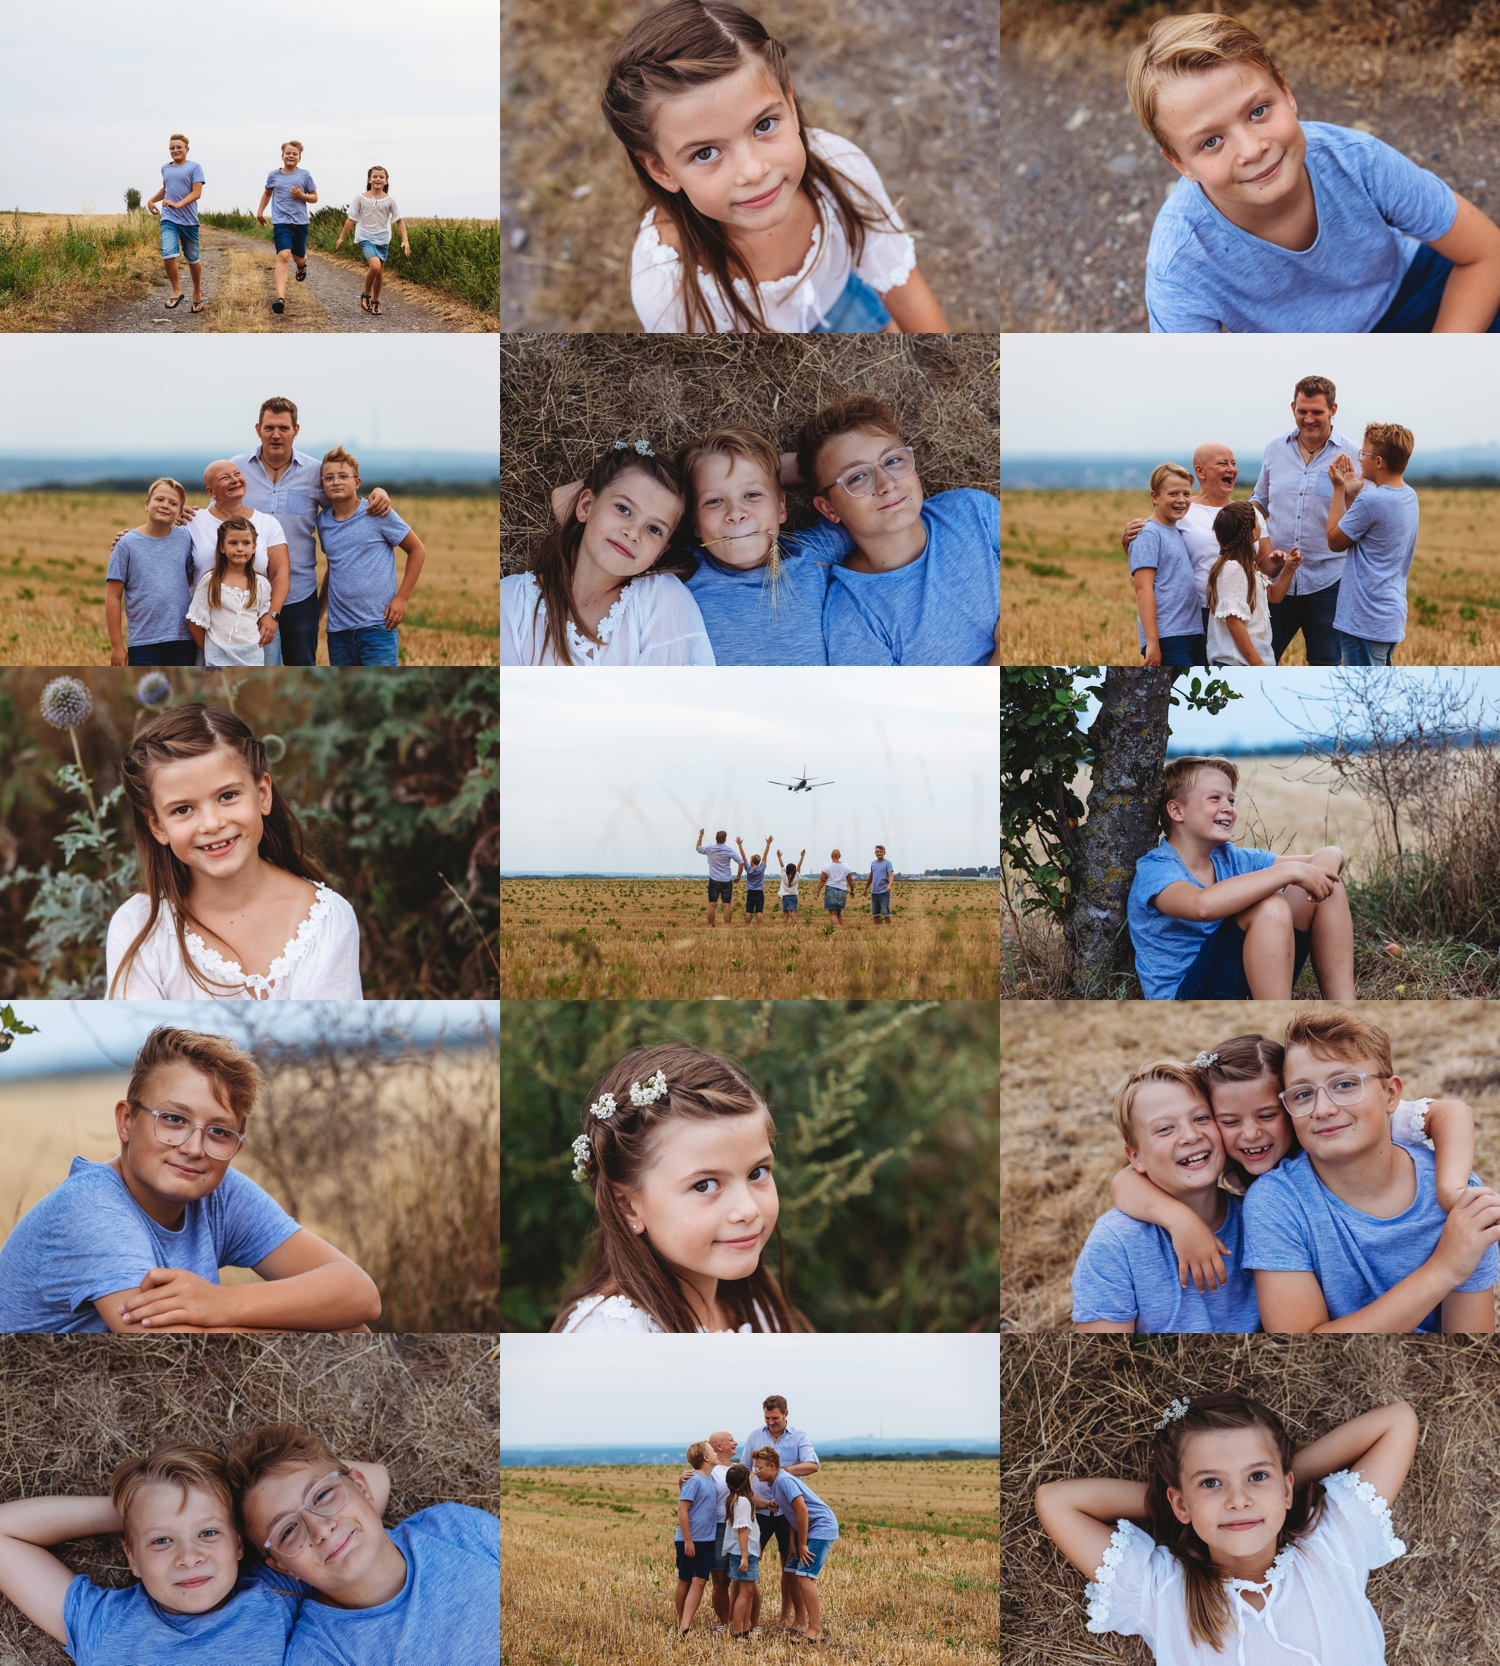 Britta-Passmann-Fotografie-Dortmund-Familienfotos-Kinderfotos-Fotoshooting_Sommeraktion_2020